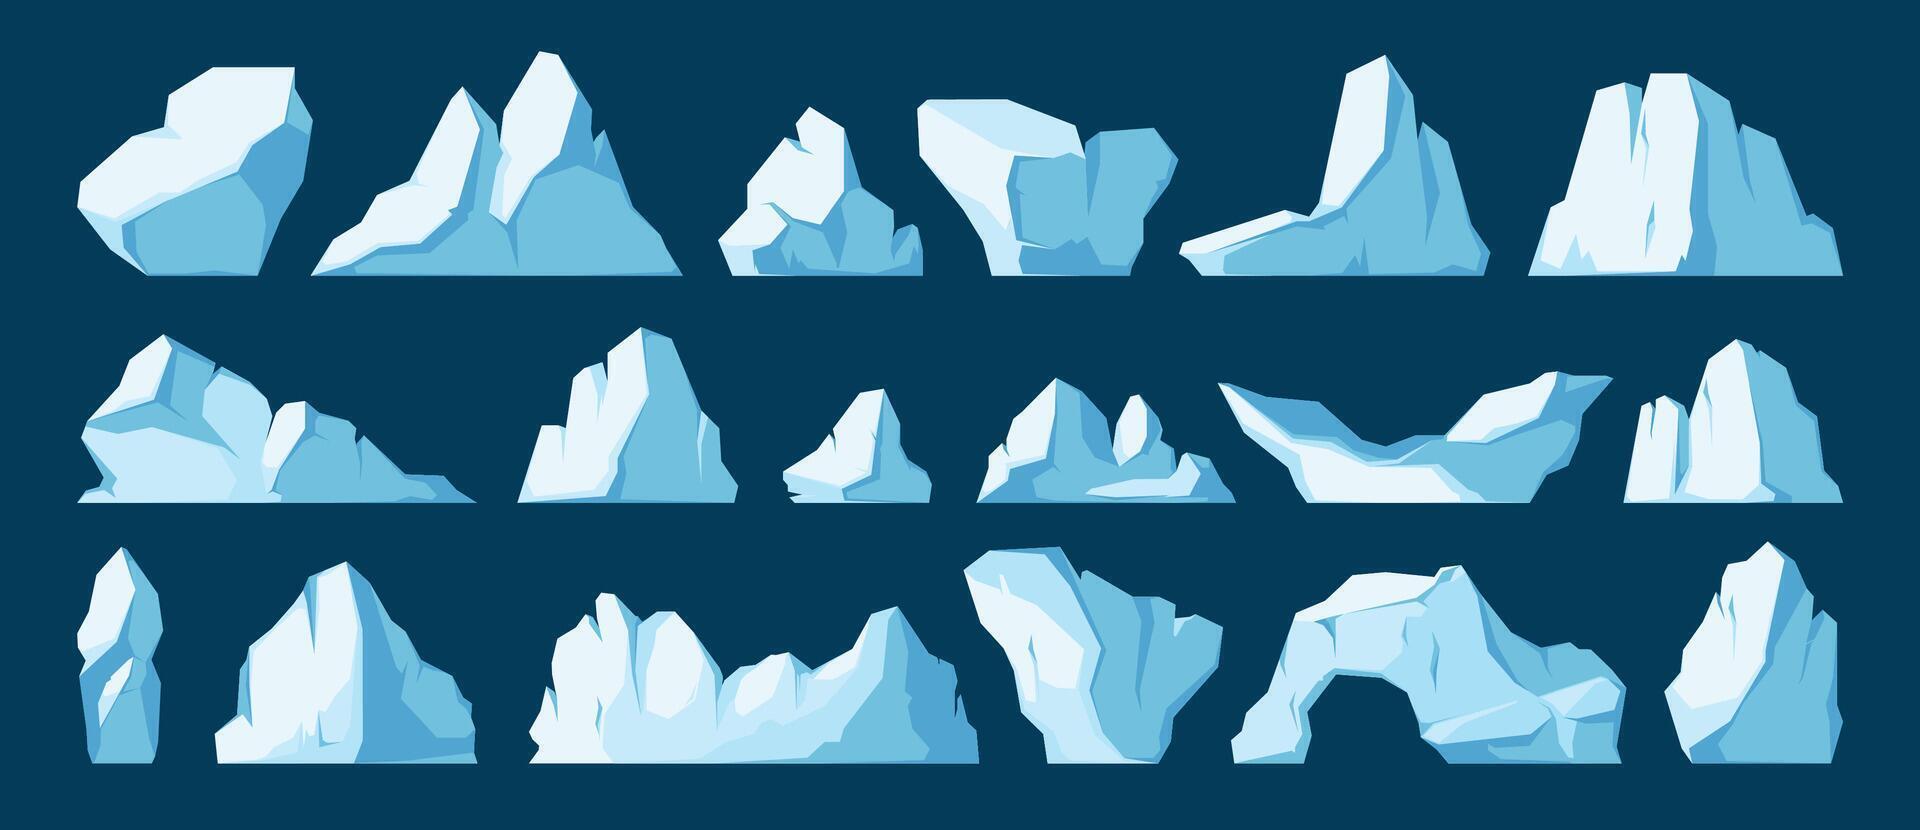 iceberg collection. dessin animé fusion iceberg flottant dans océan, congelé polaire glacier fragment, hiver la glace culminer. vecteur isolé ensemble